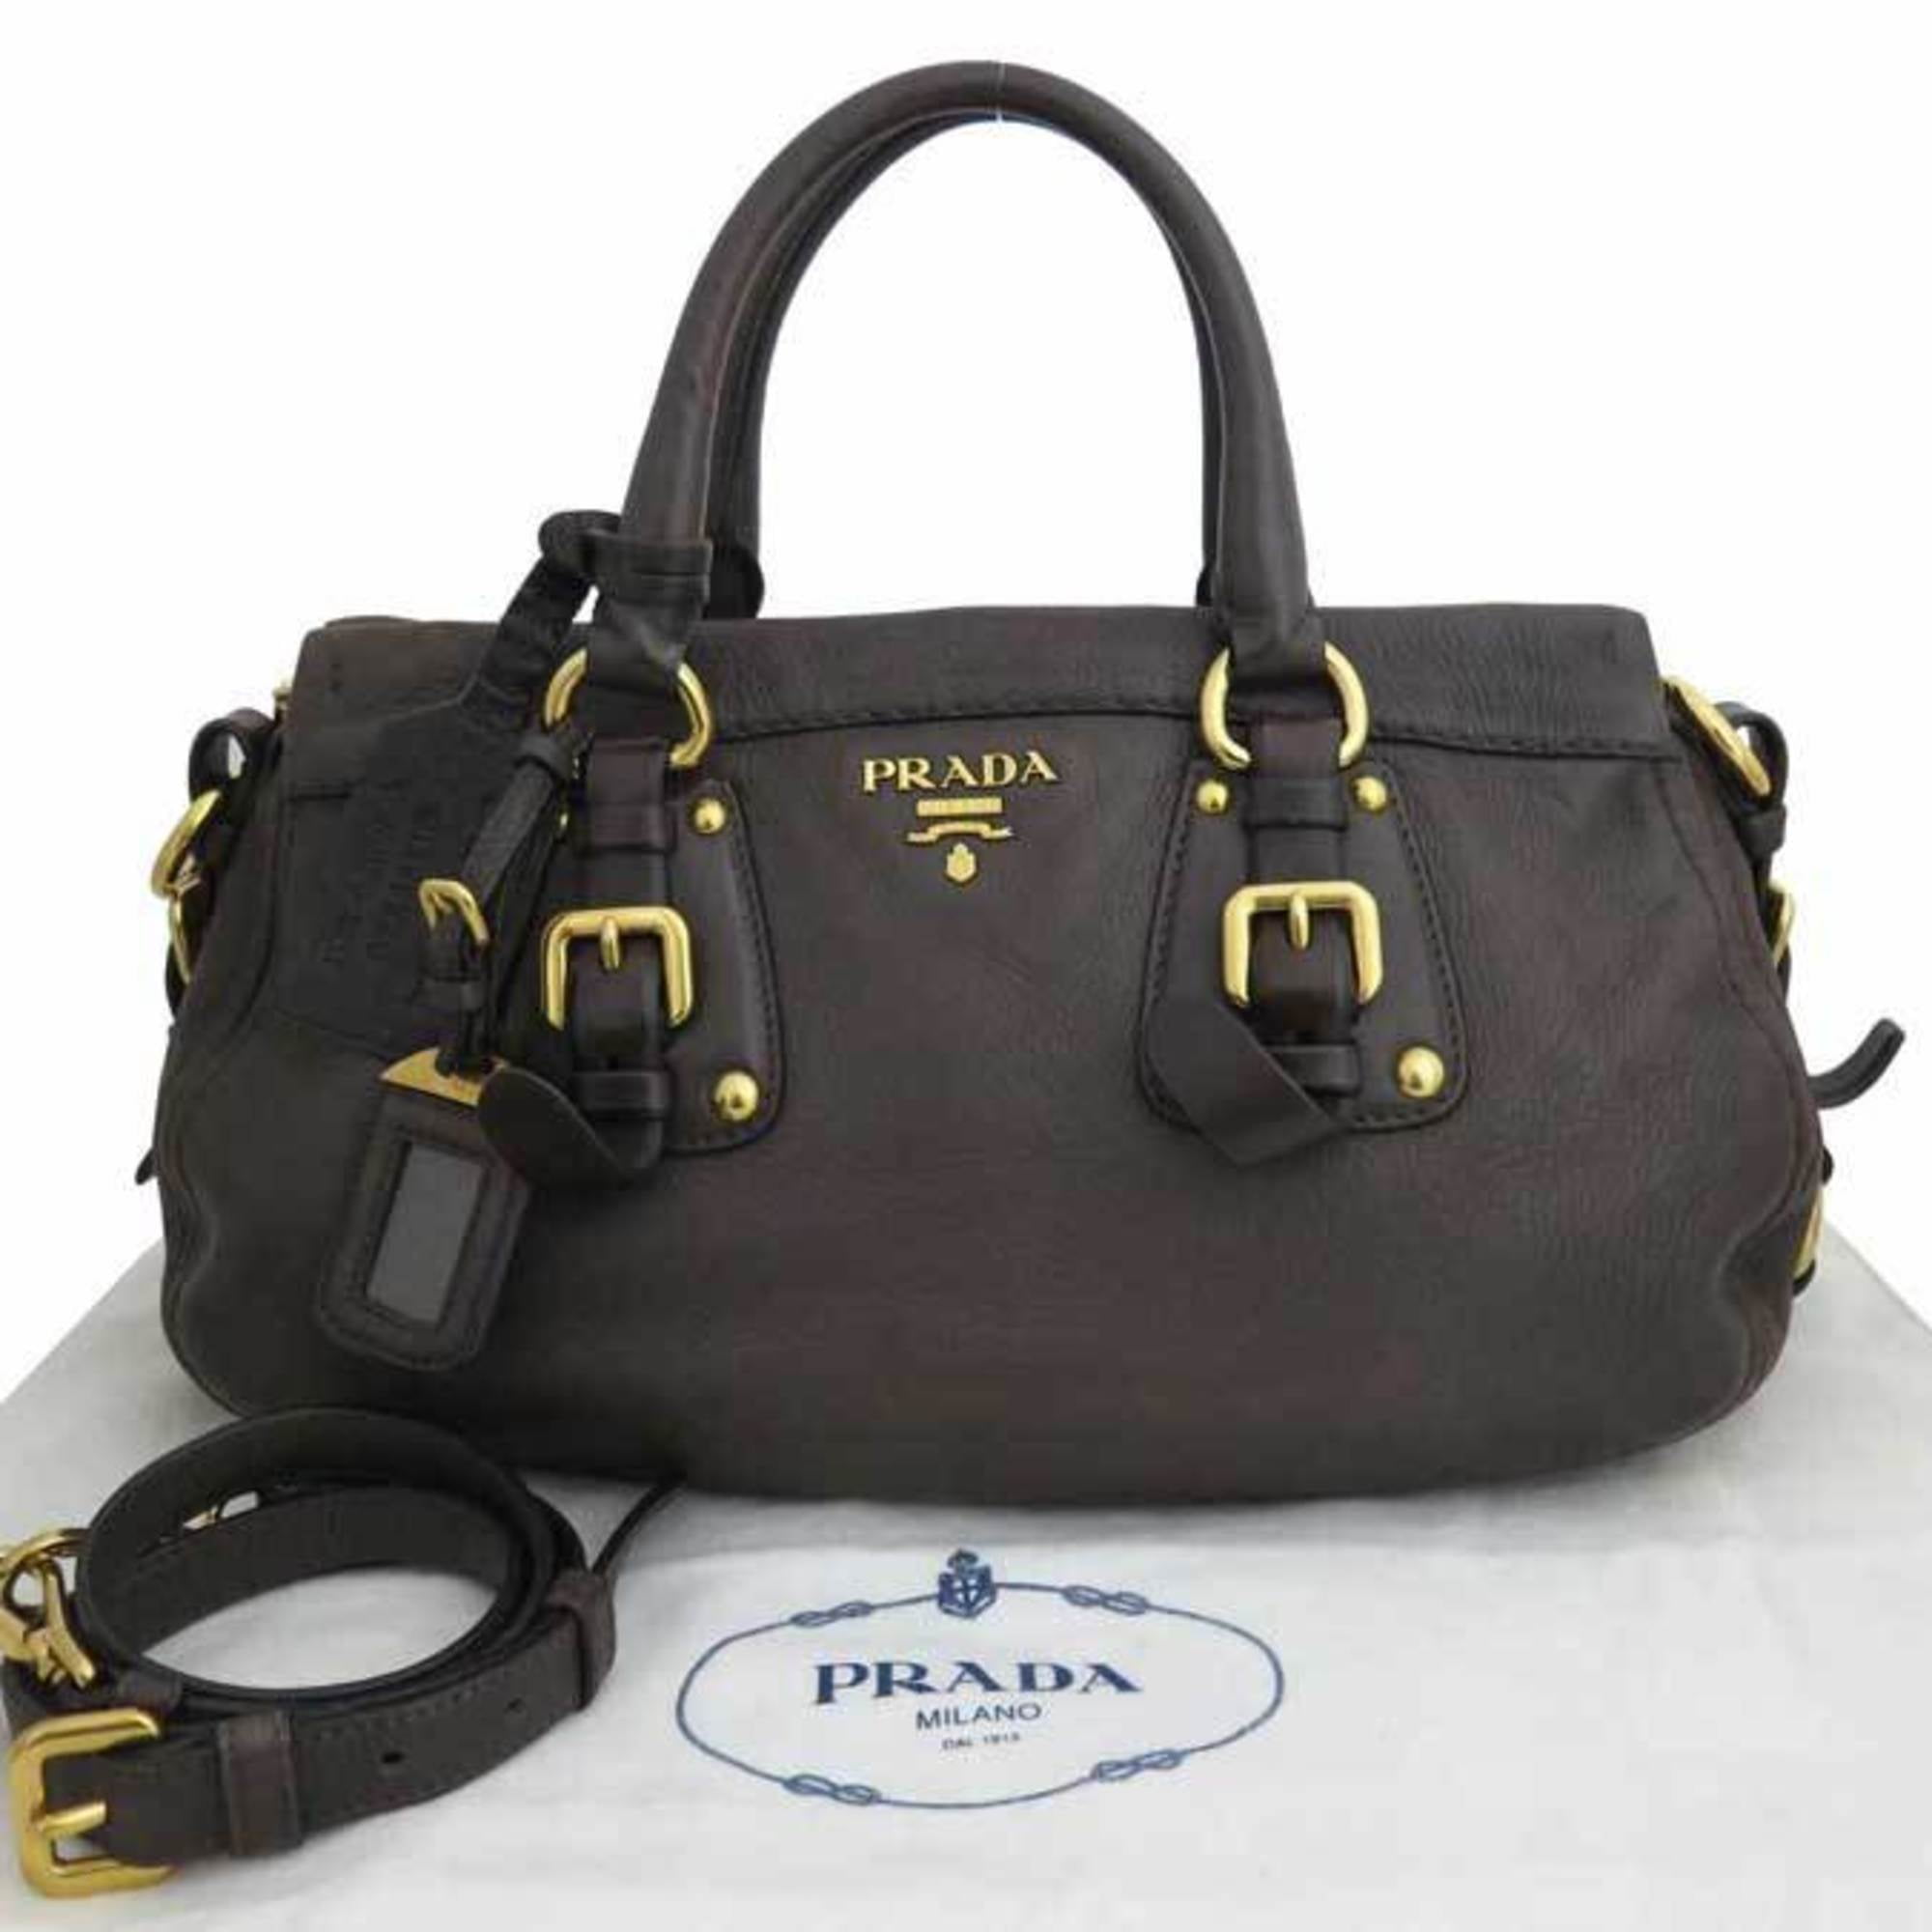 Buy Prada Milano Women Black Handheld Bag black Online  Best Price in  India  Flipkartcom